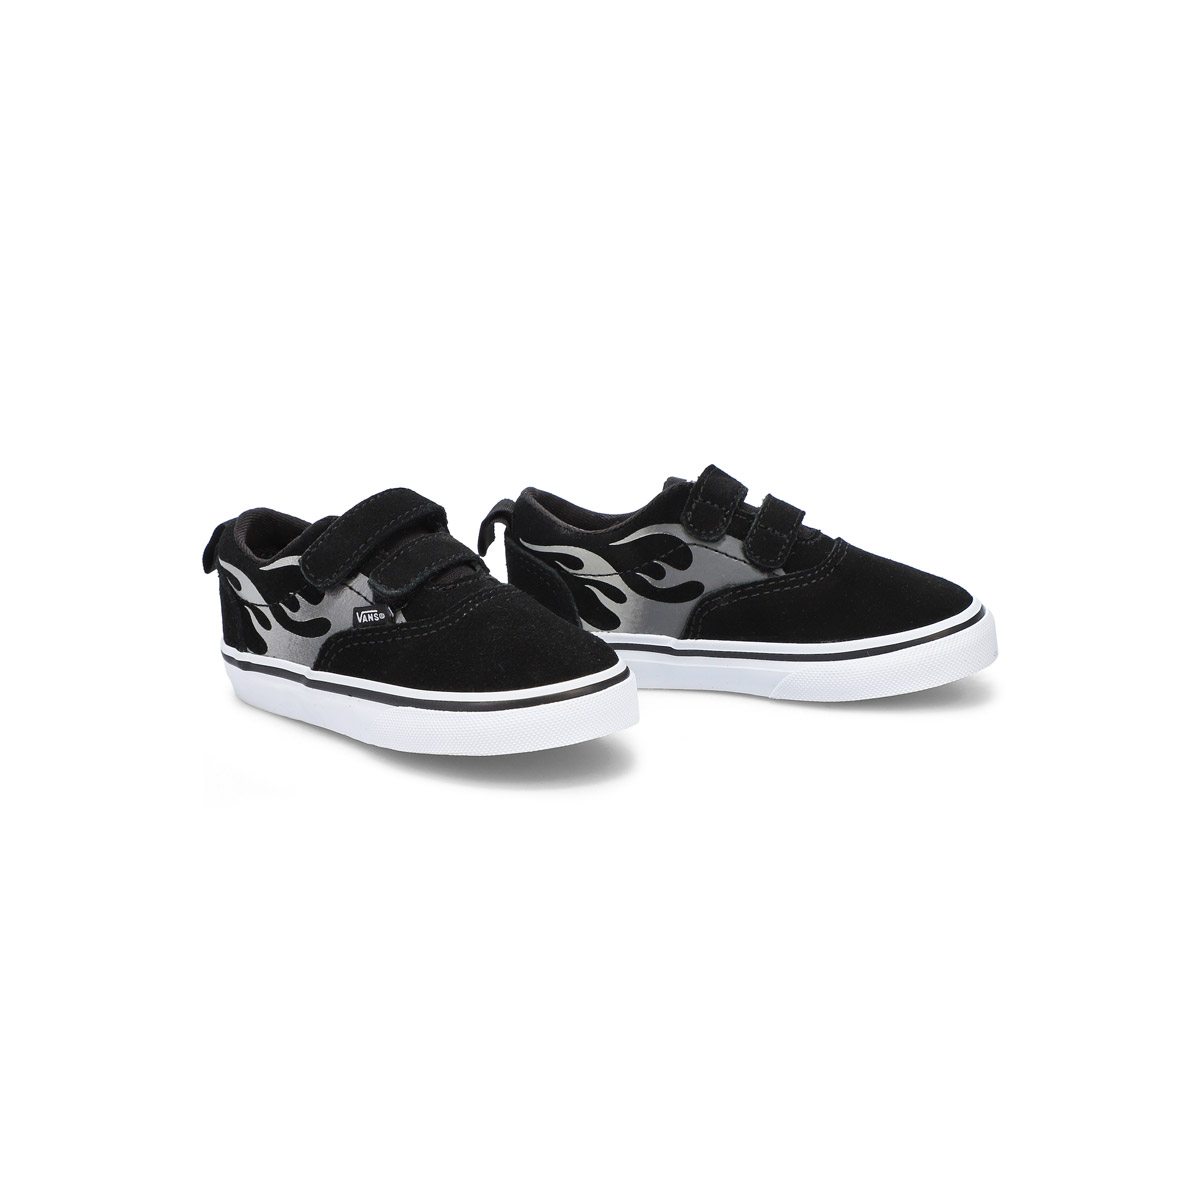 Infants' Doheny V Sneaker - Black/White Flame